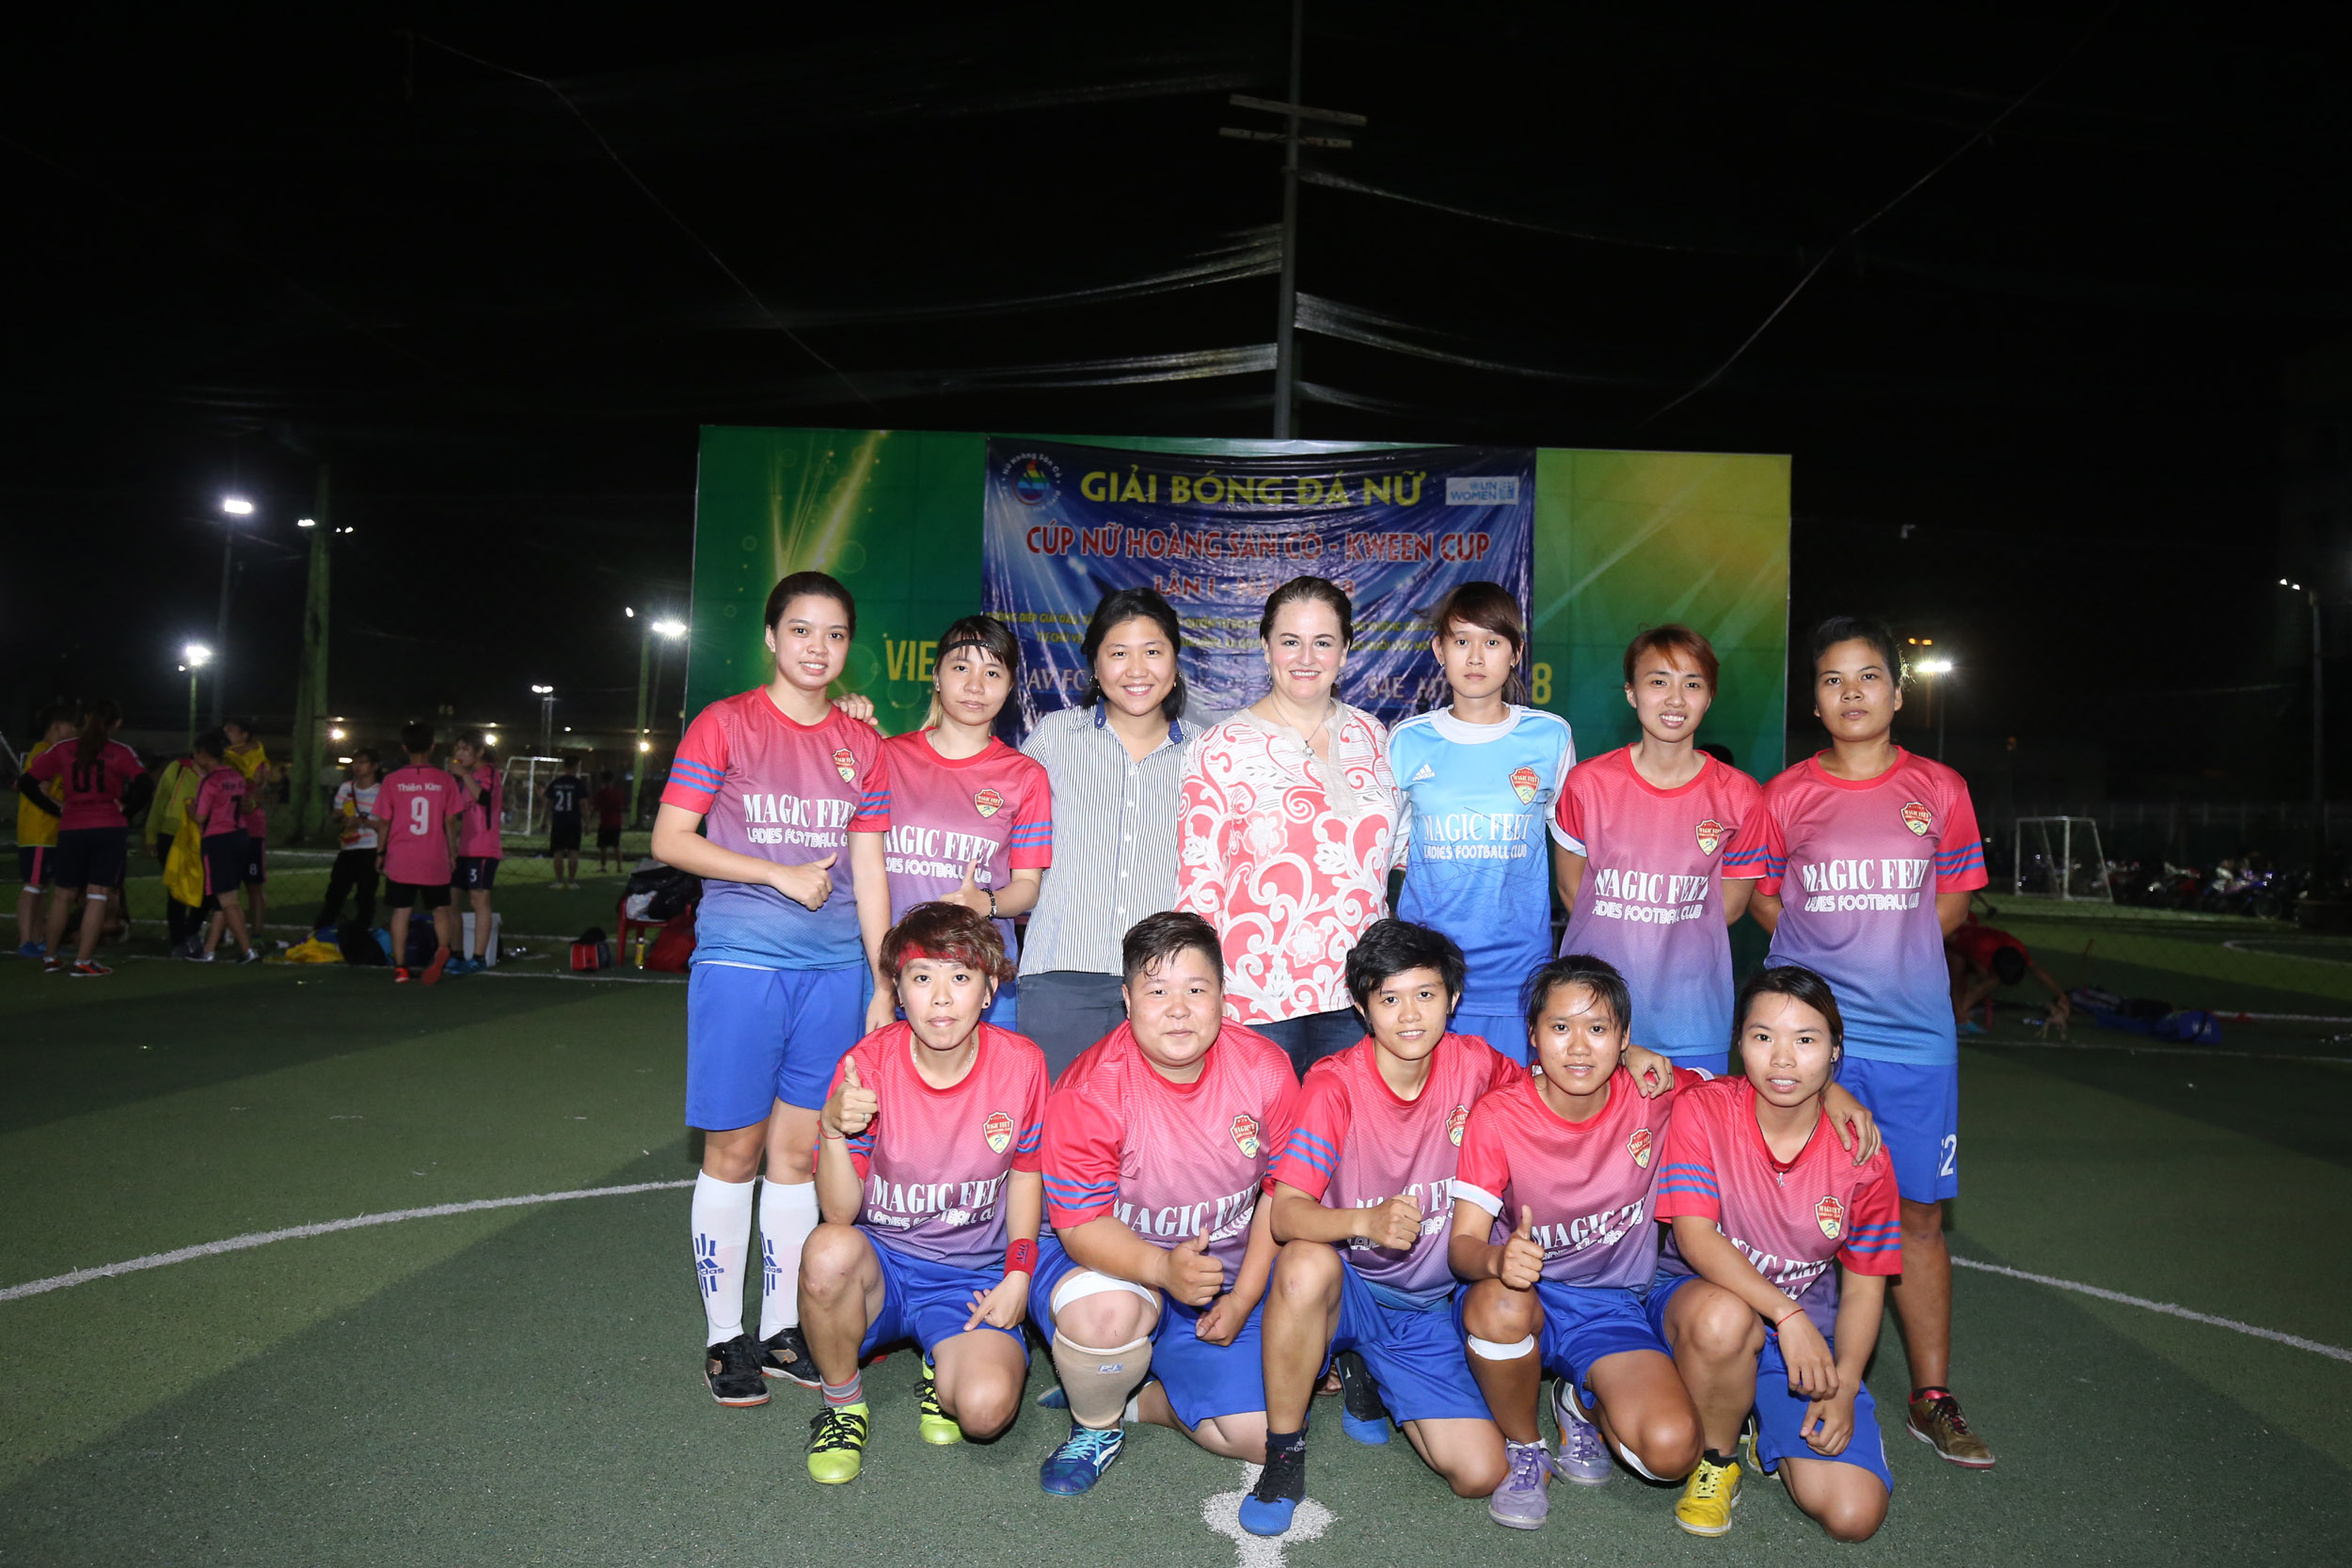 Giải bóng đá này do Cơ quan Liên hợp quốc về Bình đẳng giới và Trao quyền cho Phụ nữ (UN Women) tại Việt Nam và Nhóm cộng đồng “Phụ nữ làm nên sự khác biệt” tổ chức tại sân vận động mini Chảo Lửa, thành phố Hồ Chí Minh với sự góp mặt của 06 đội bóng đá nữ phong trào hiện đang sinh hoạt tại thành phố Hồ Chí Minh và các tỉnh lân cận.

